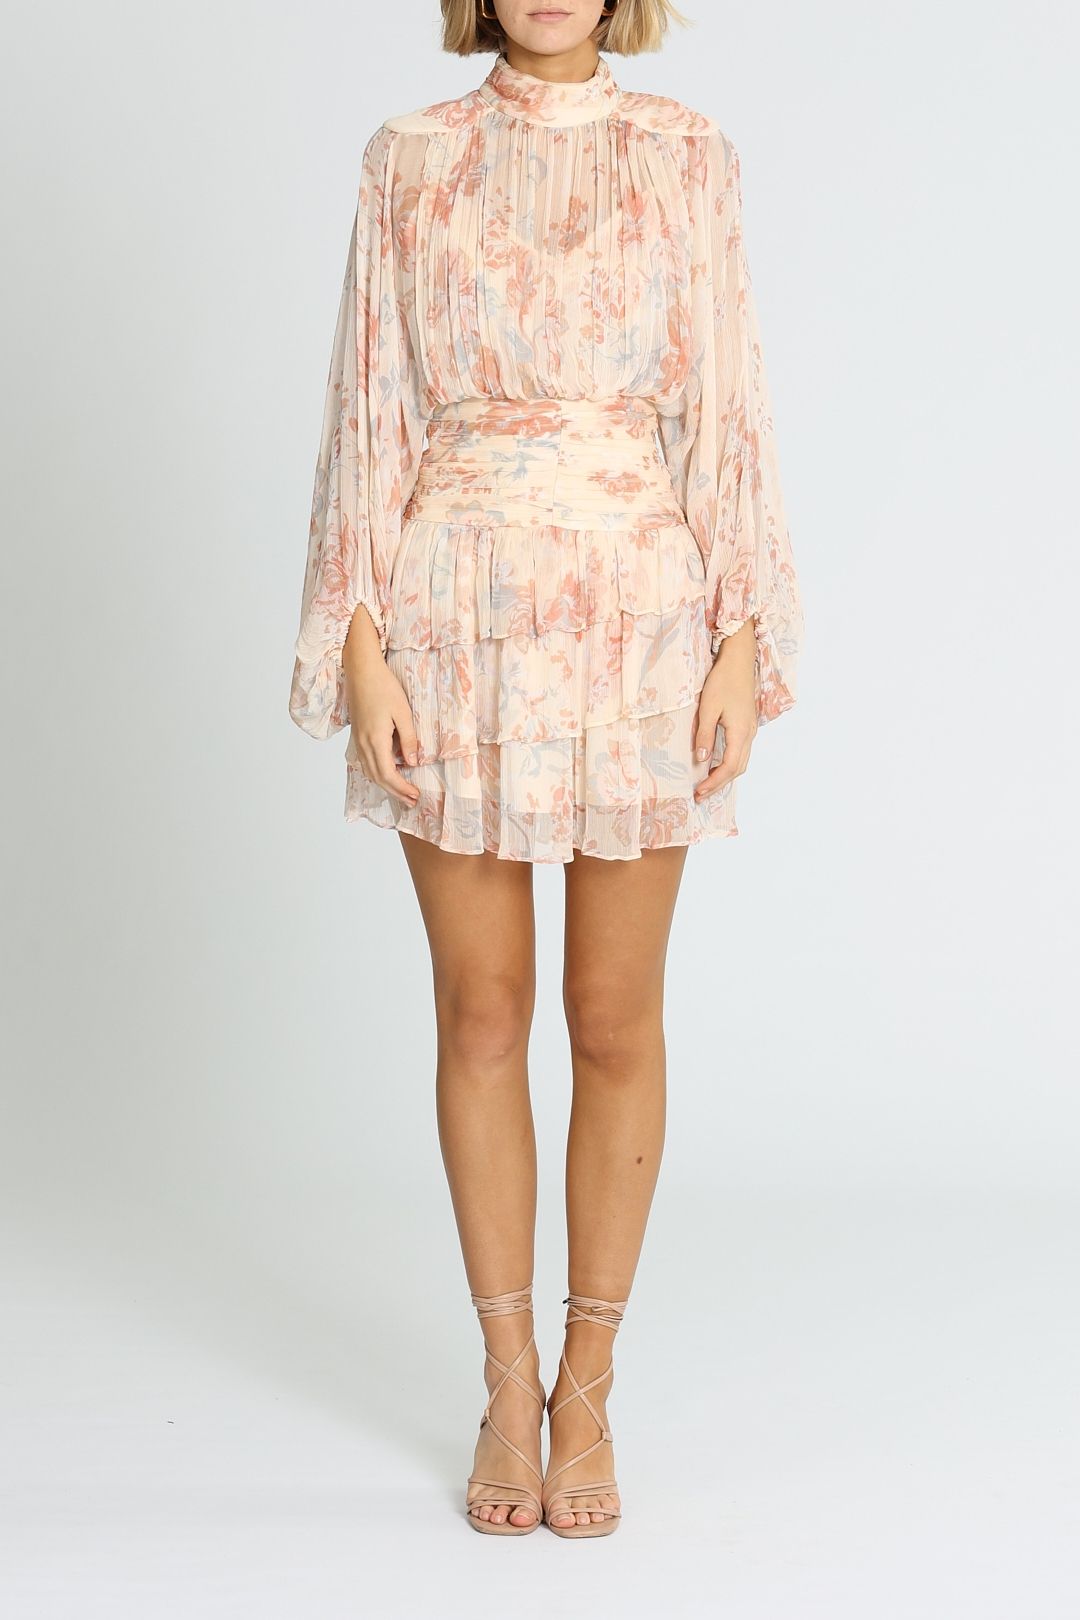 Shona Joy Faye Ruched Mini Dress Blush